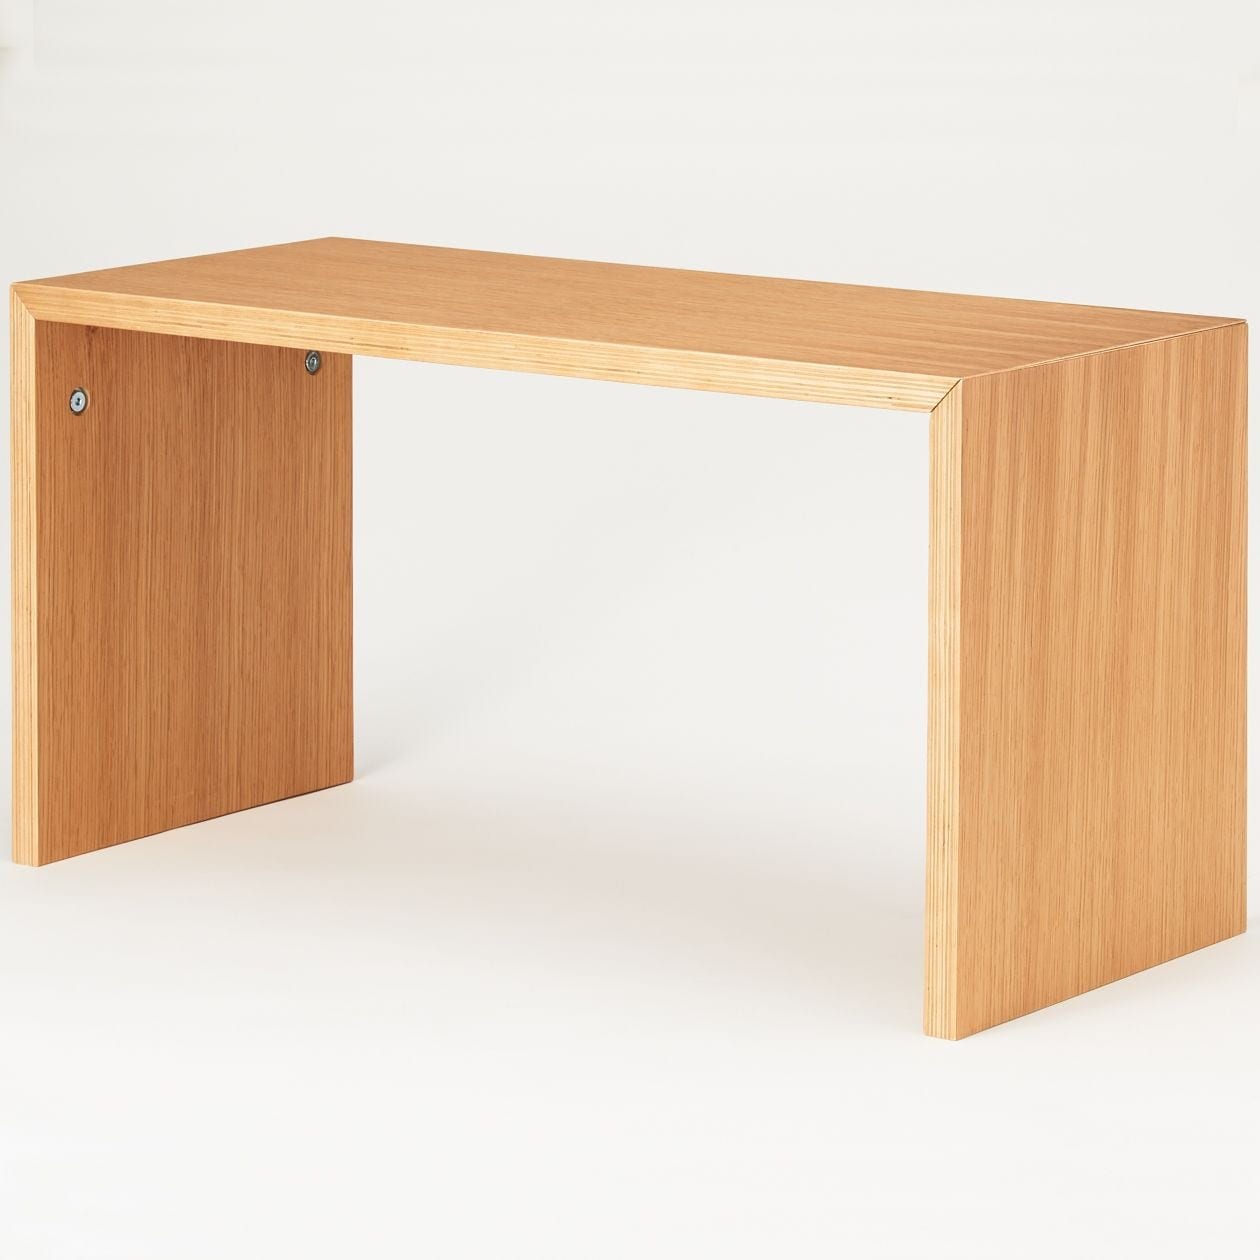 格安コの字家具 - サイドテーブル・ナイトテーブル・ローテーブル